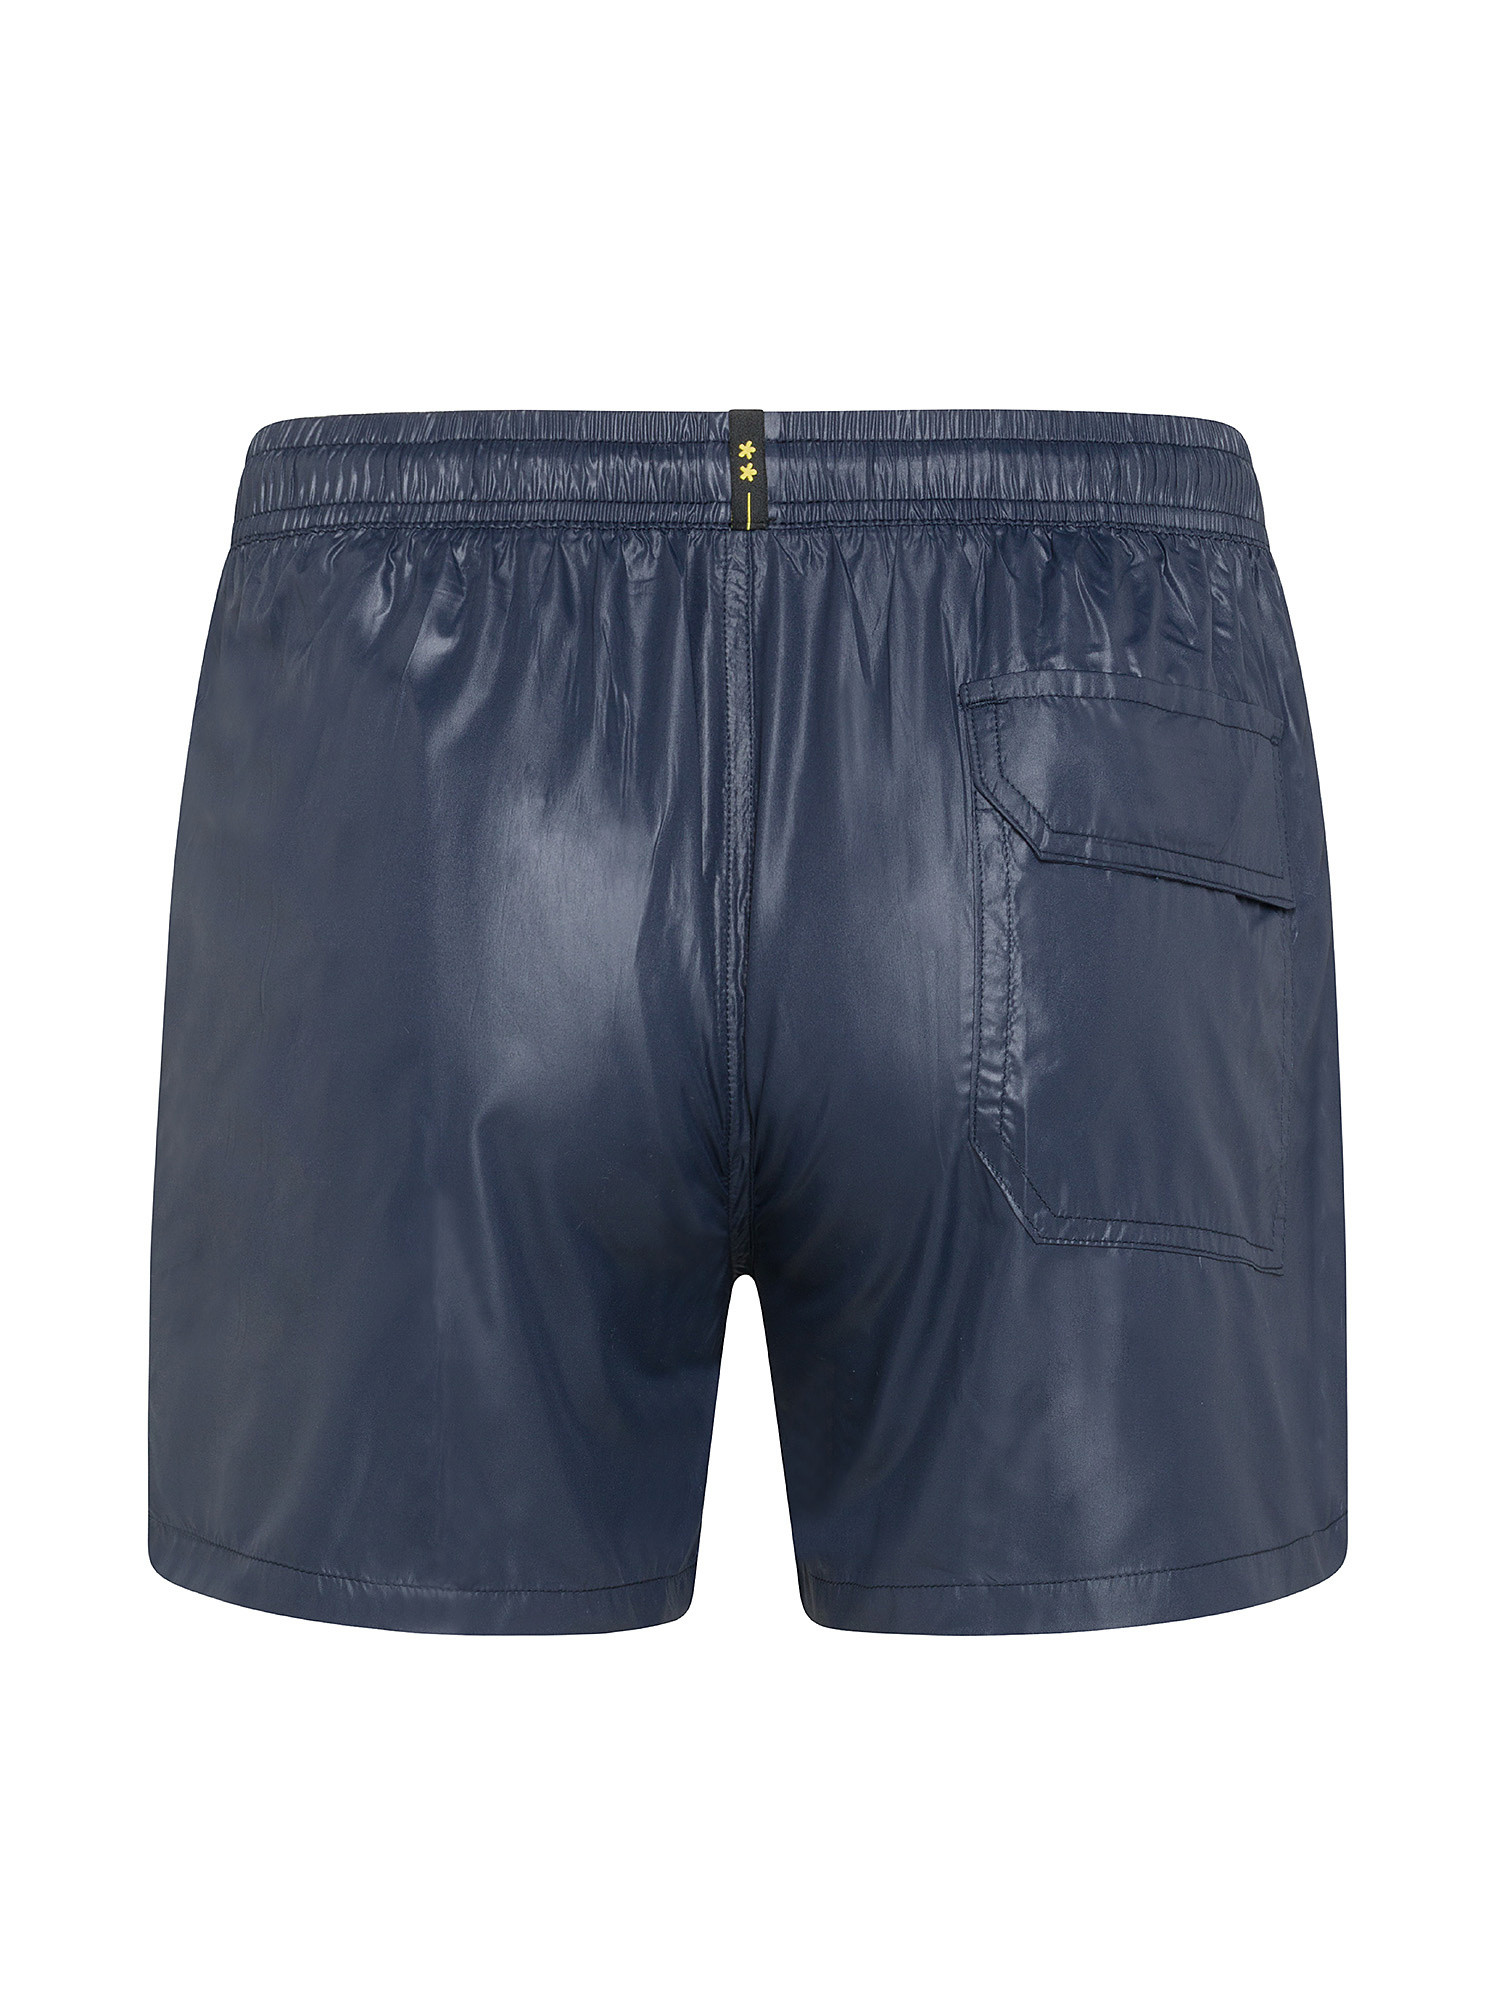 F**K - Shiny swim shorts, Dark Blue, large image number 1